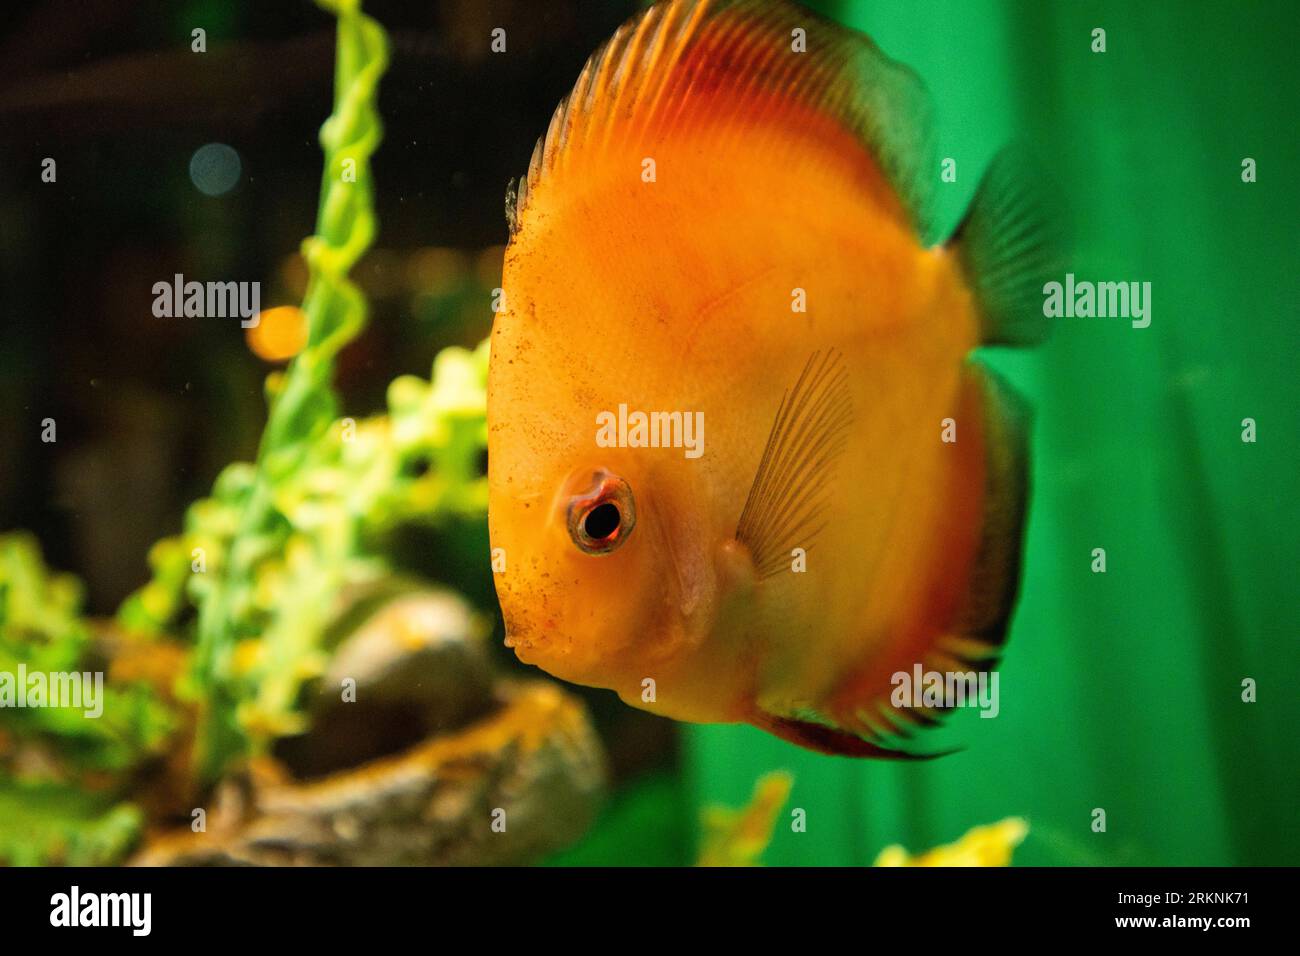 Orange fish in aquarium tank. Stock Photo